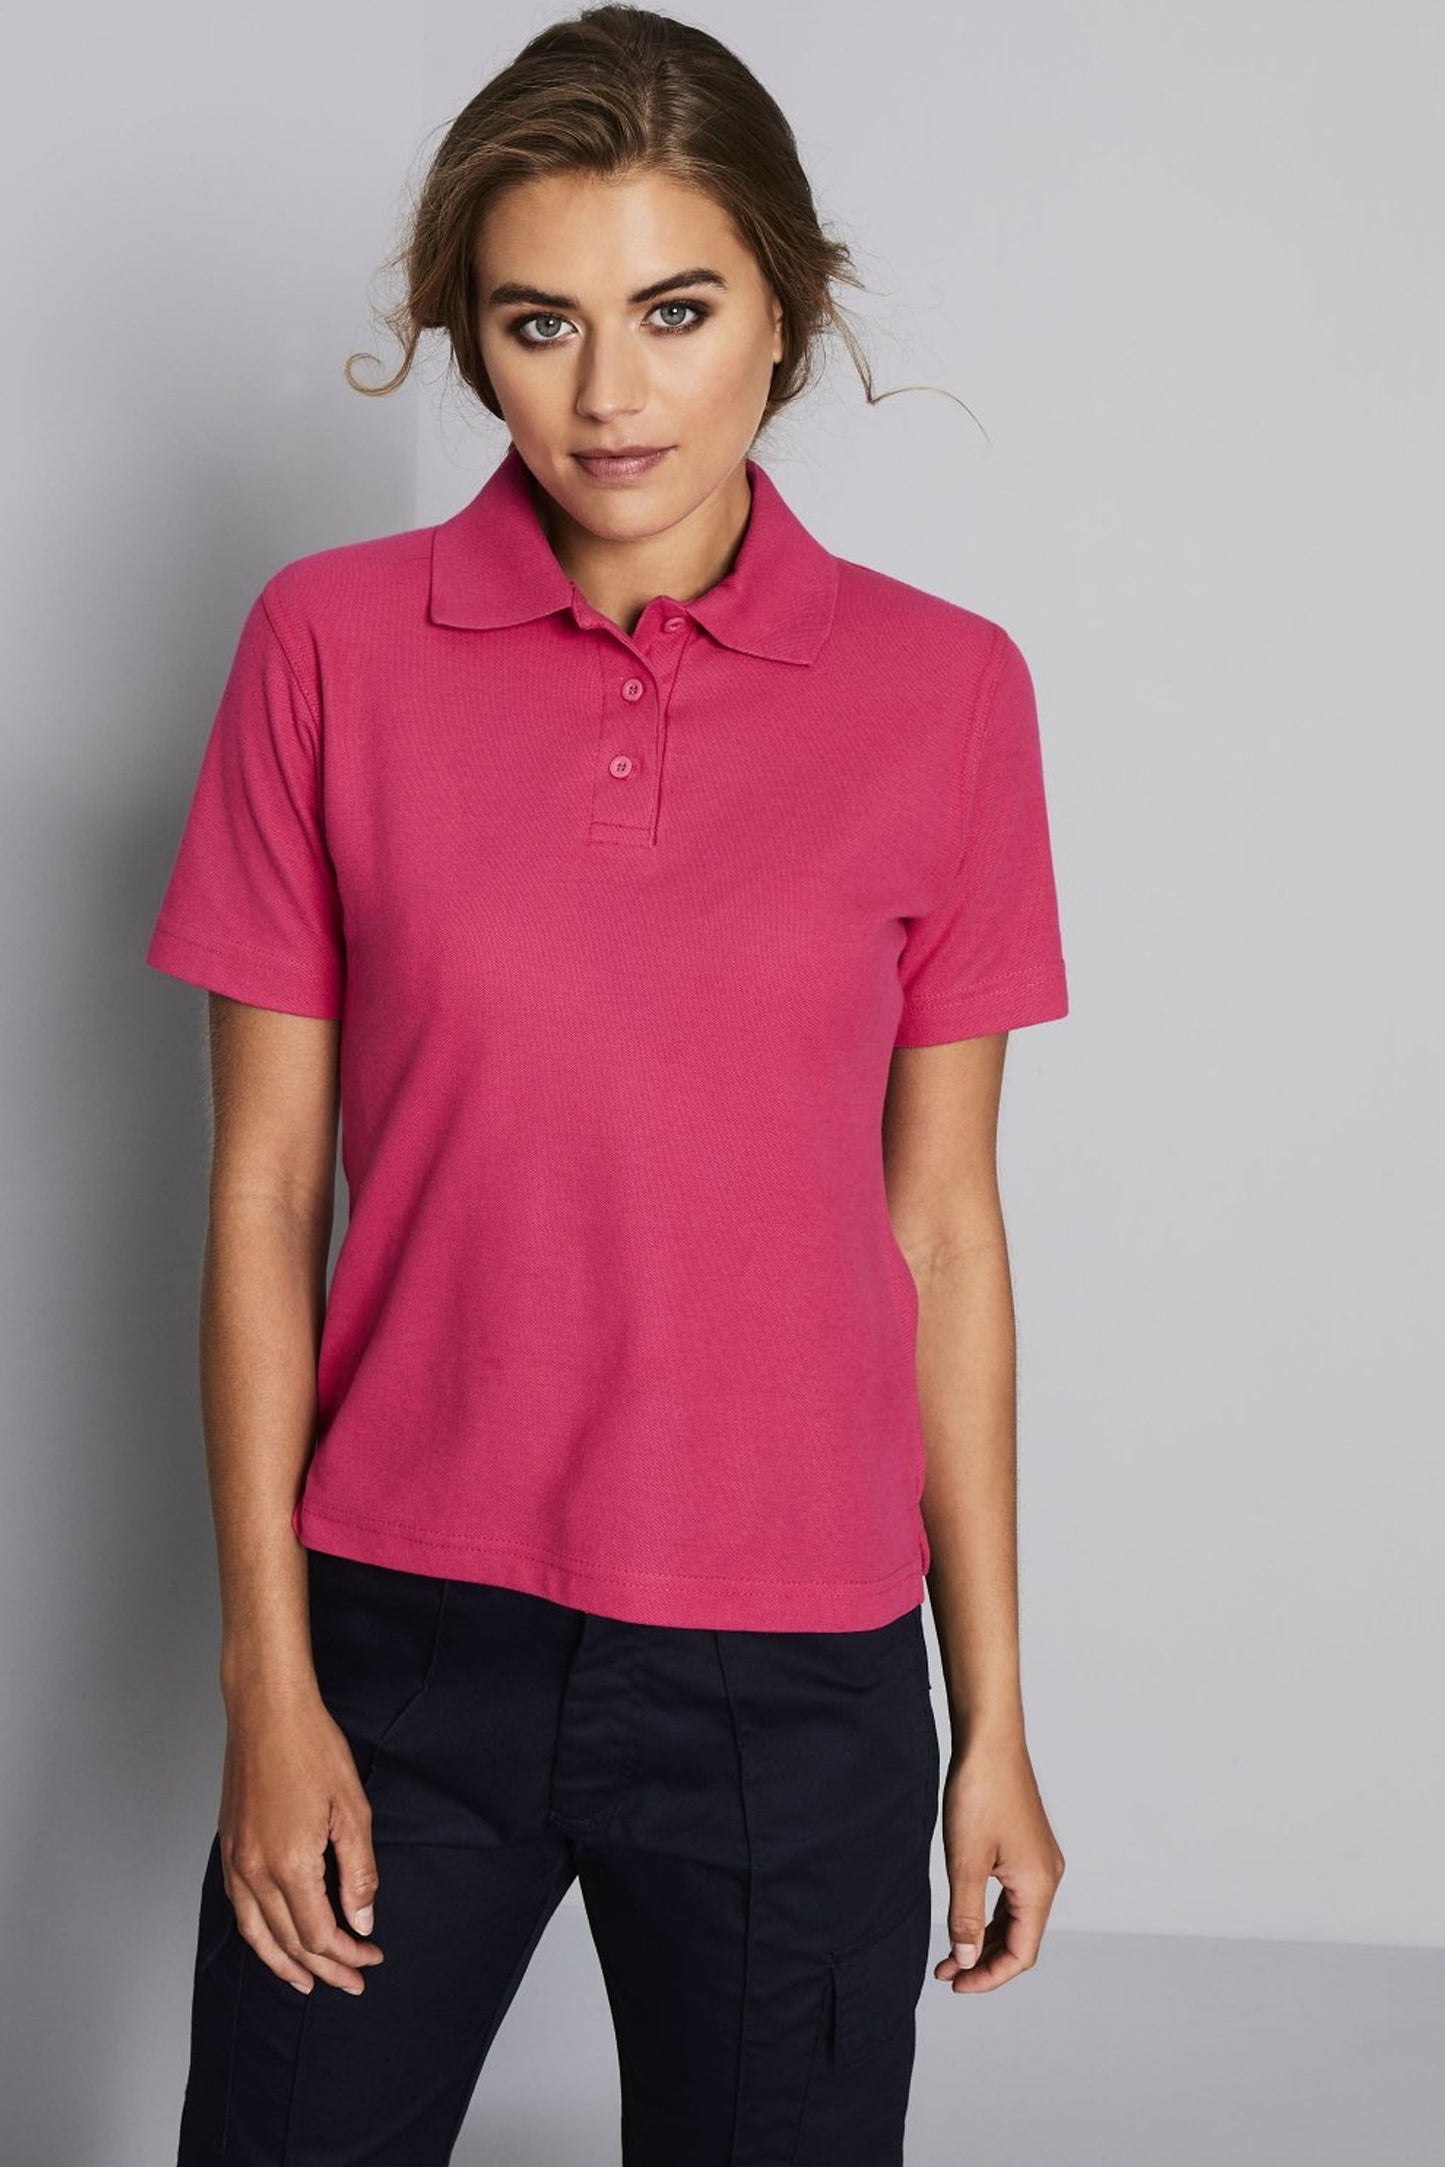 Women's Hot Pink Polo Shirt